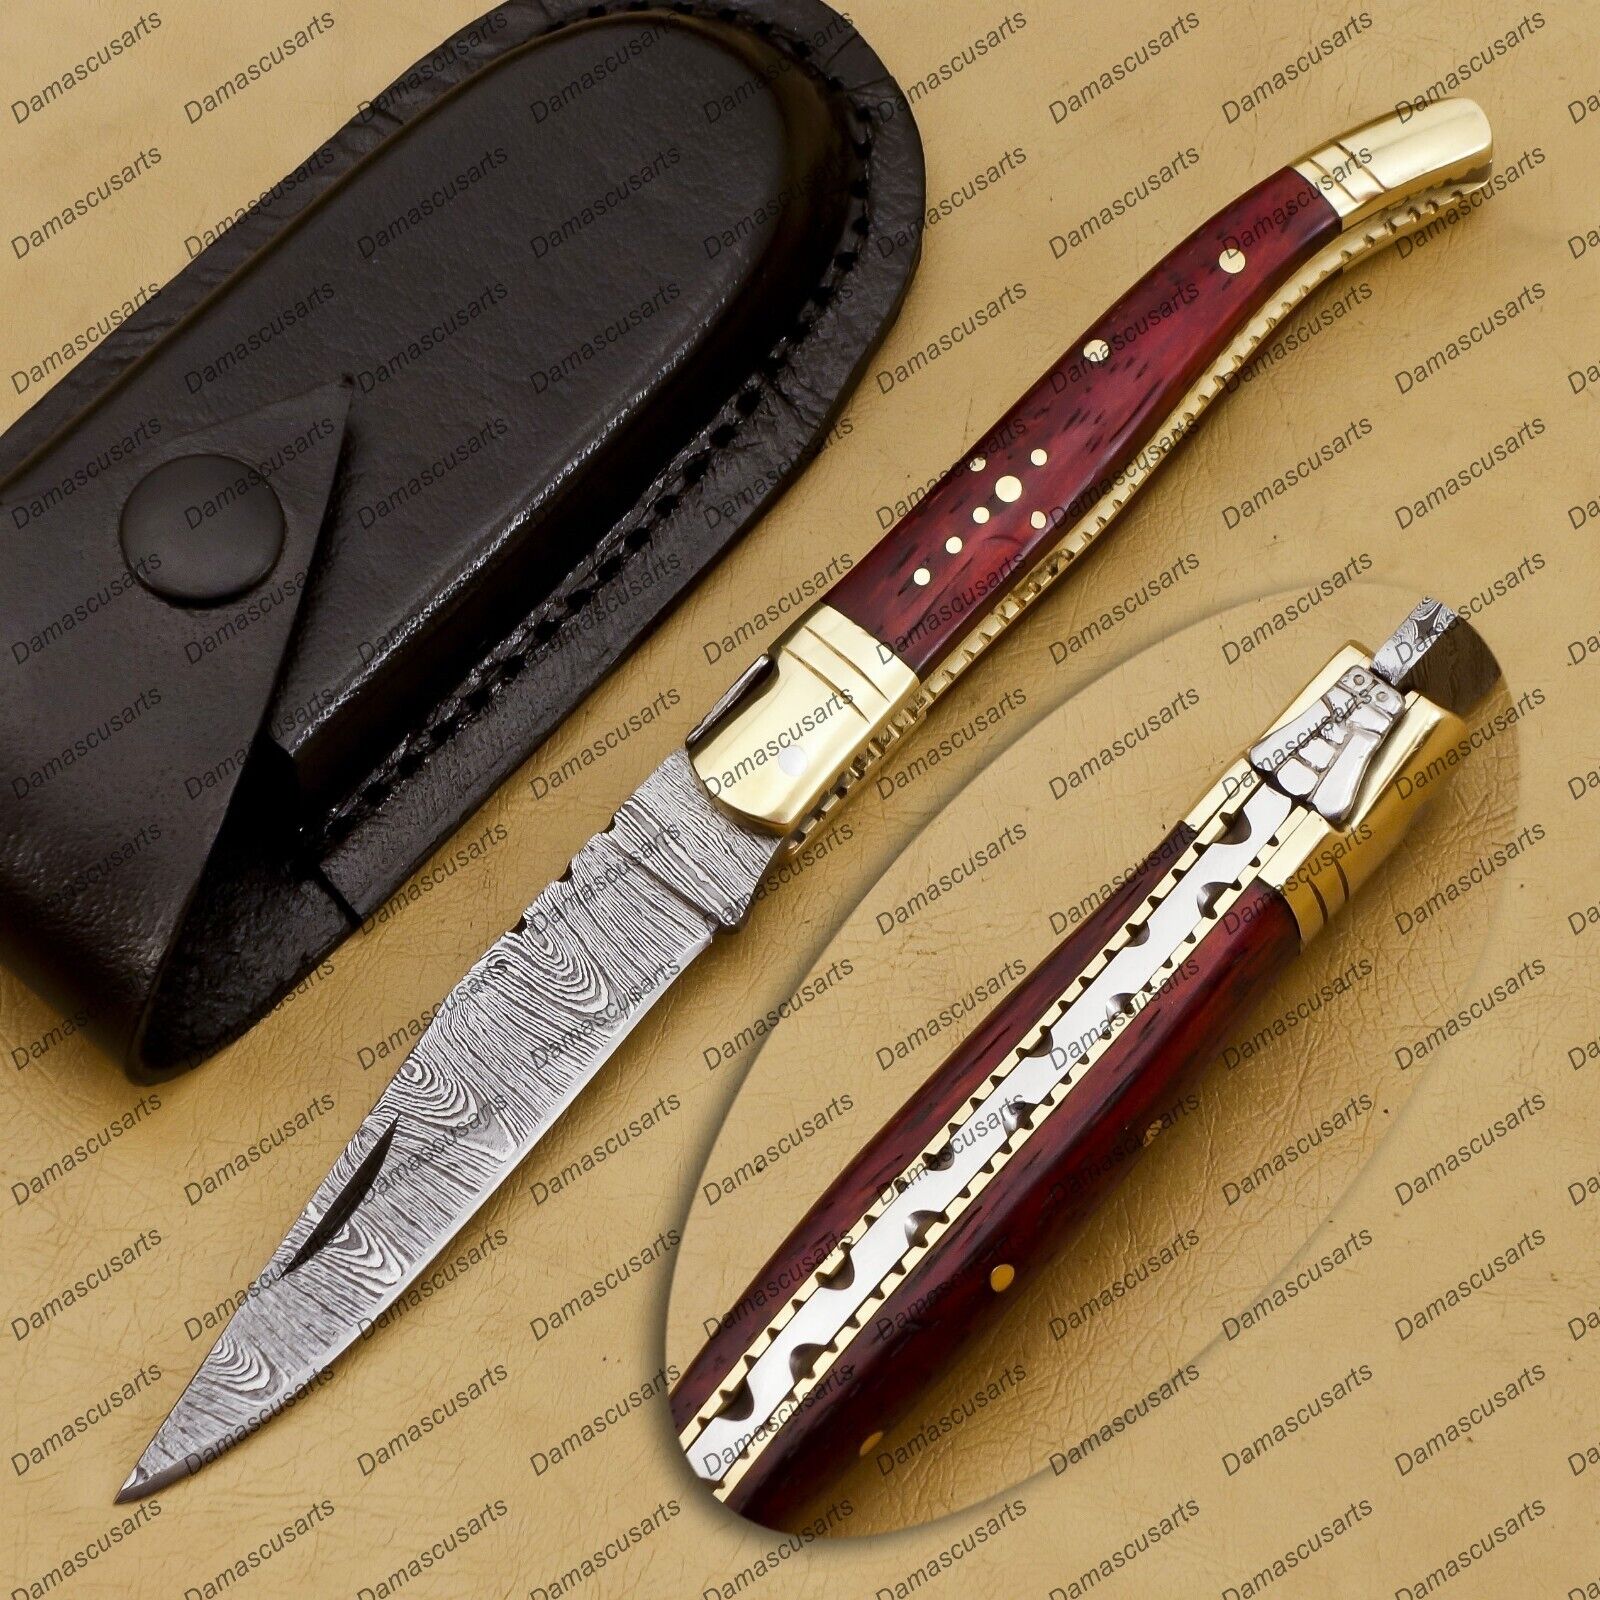 Amazing Damascus Bladed Laminate Handled Pen/Pocket Knife With Leather Sheath